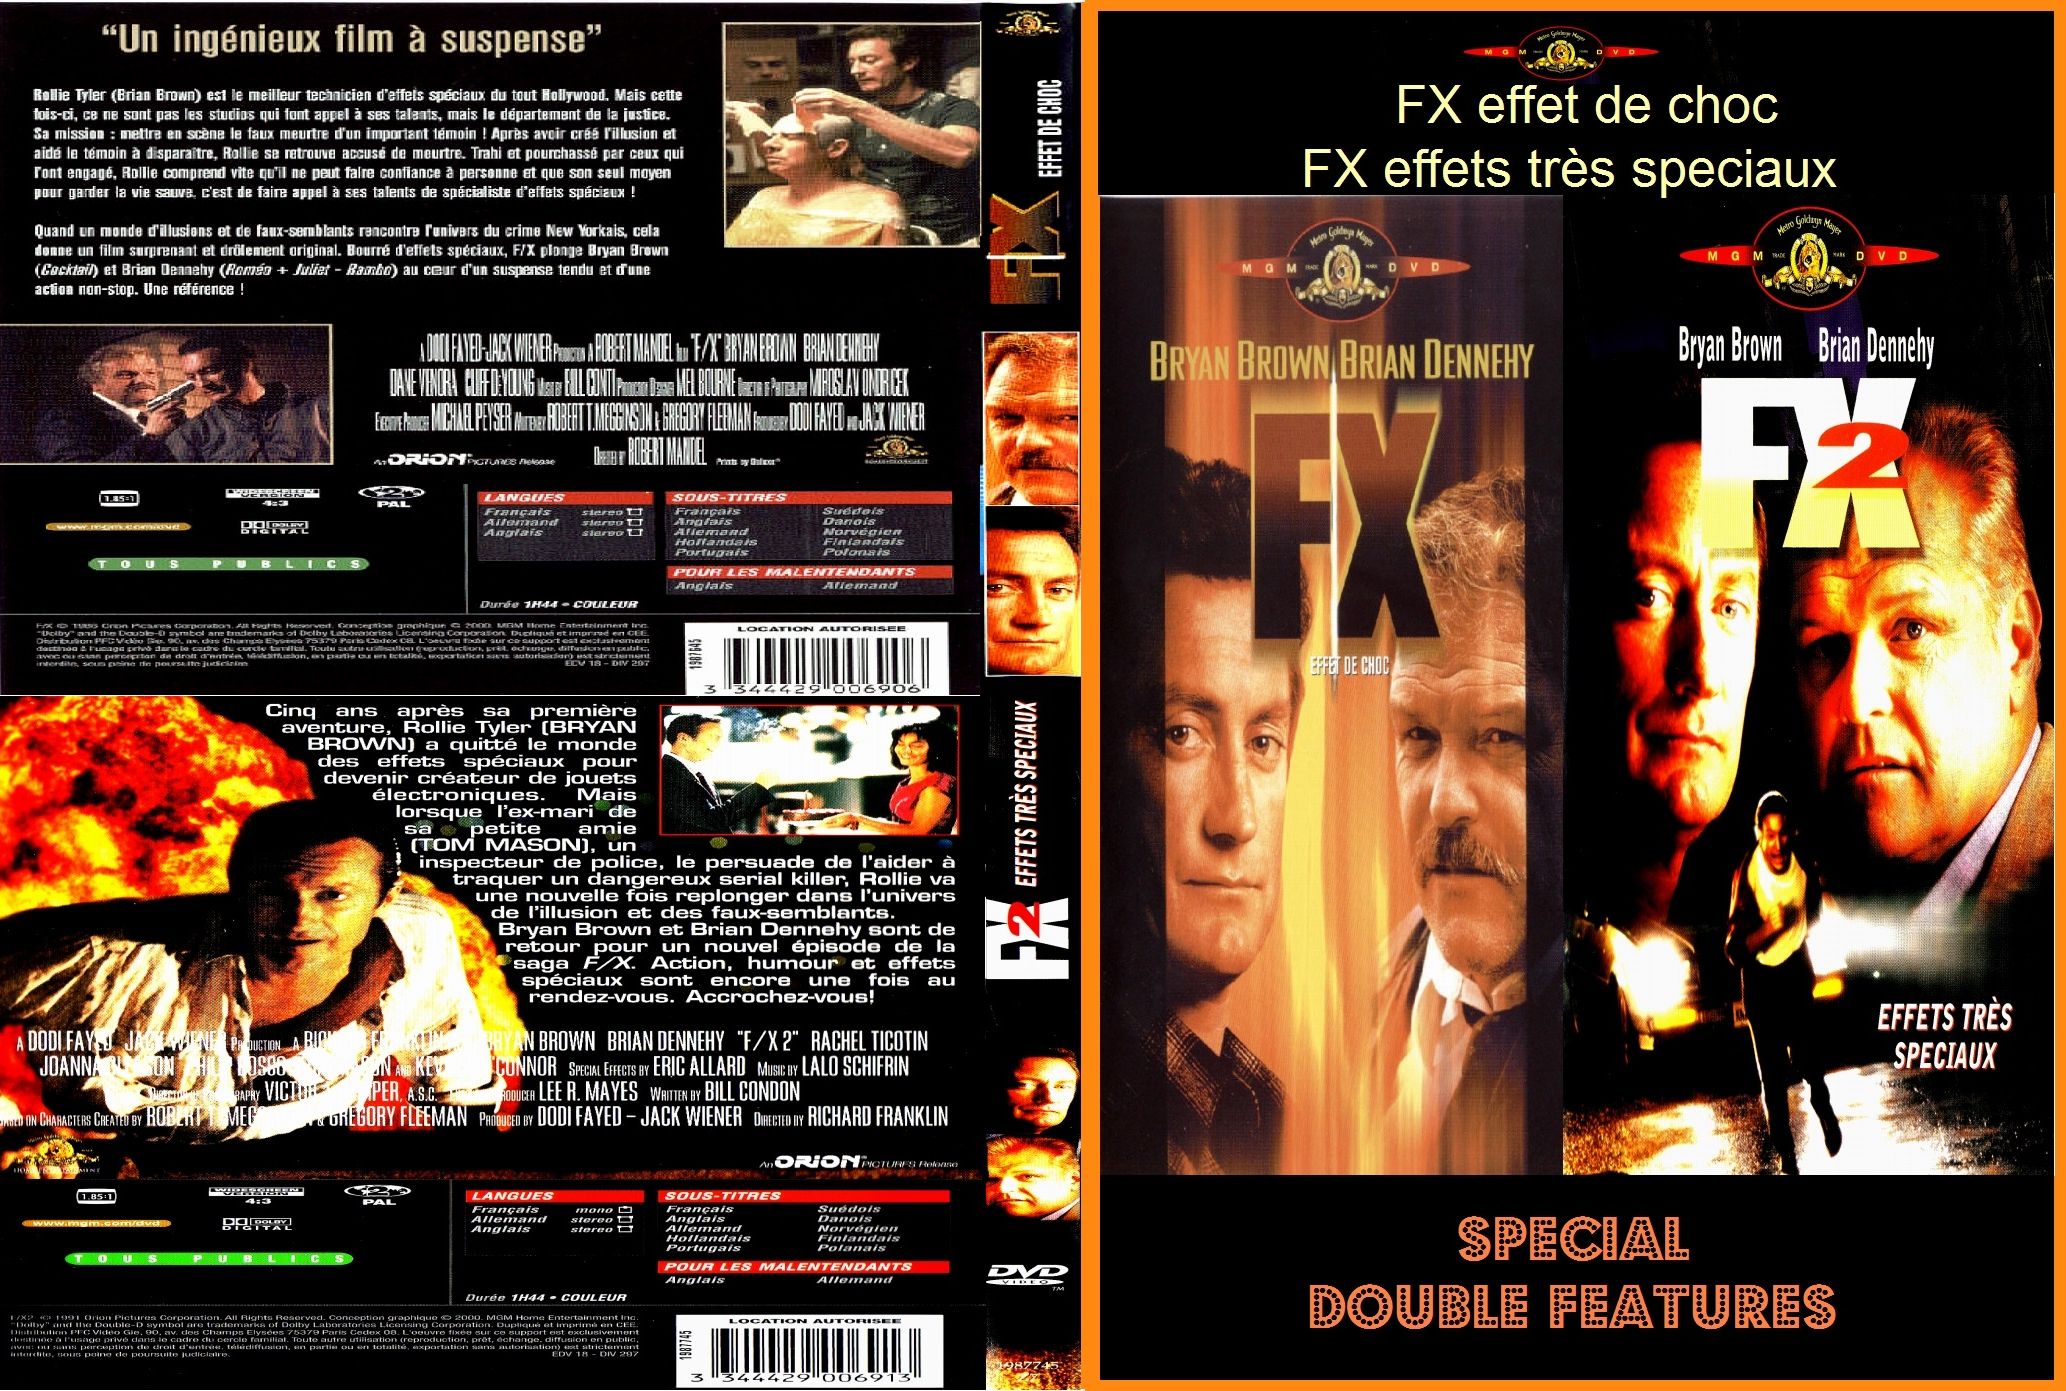 Jaquette DVD FX effet de choc & FX 2 effets tres speciaux custom